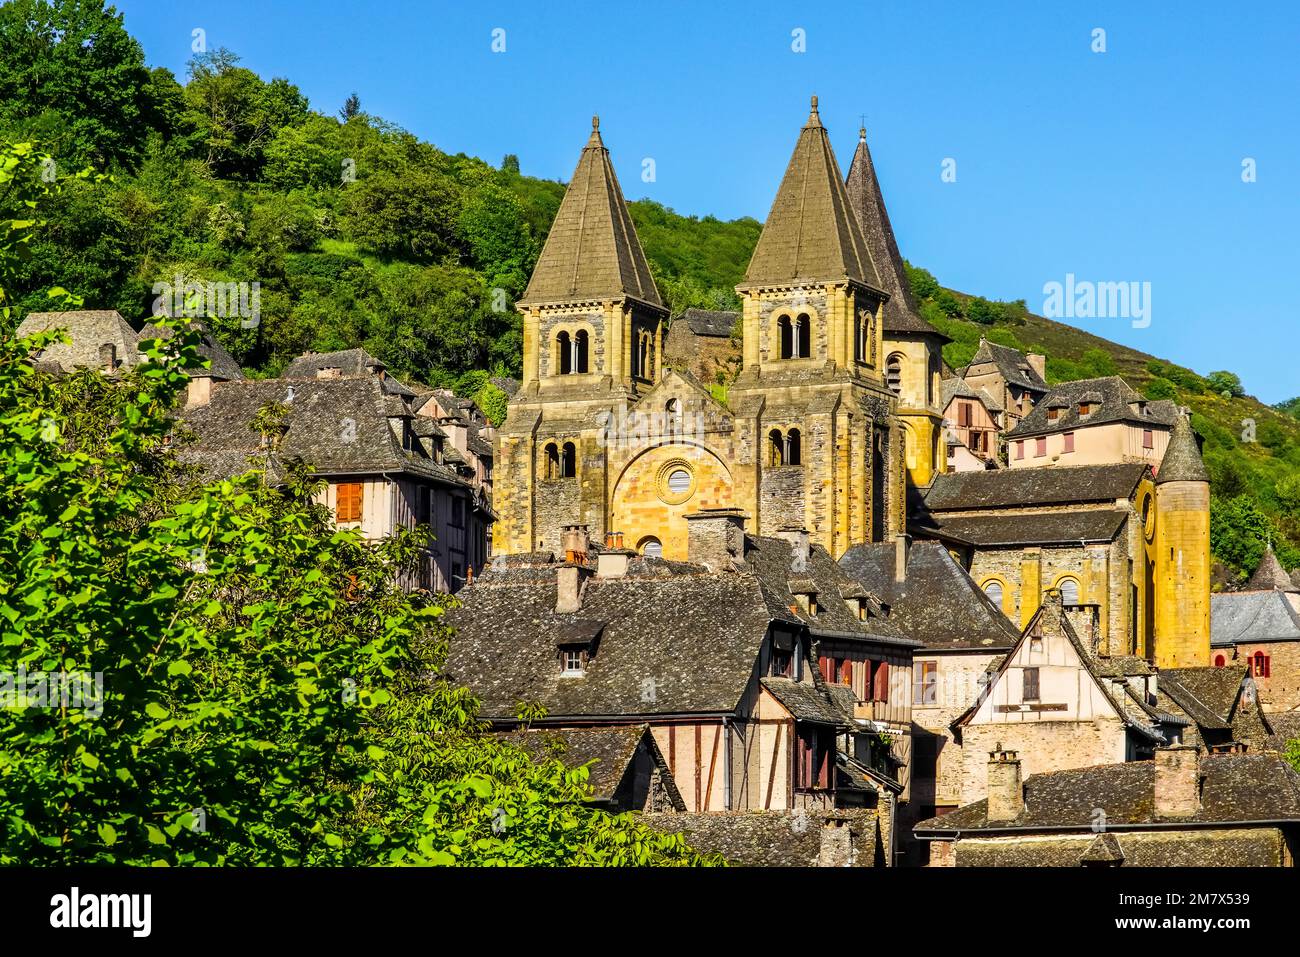 Belle vue sur la colline du village médiéval perché de Conques ; France. Banque D'Images